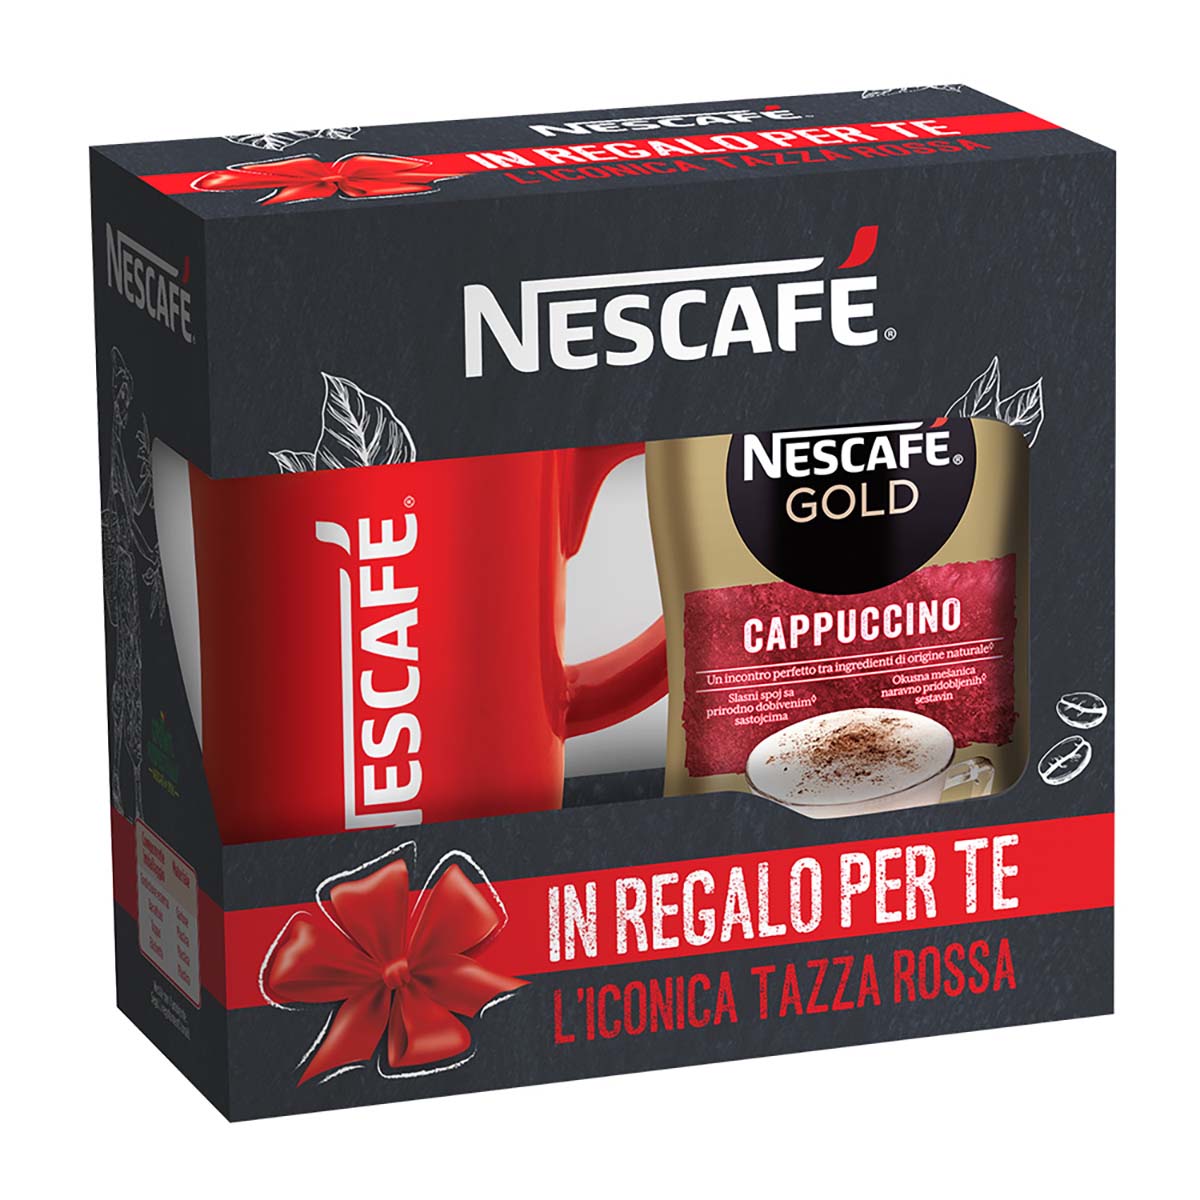 Nescafé GOLD CAPPUCCINO preparato solubile per cappuccino barattolo 250g con Red Mug